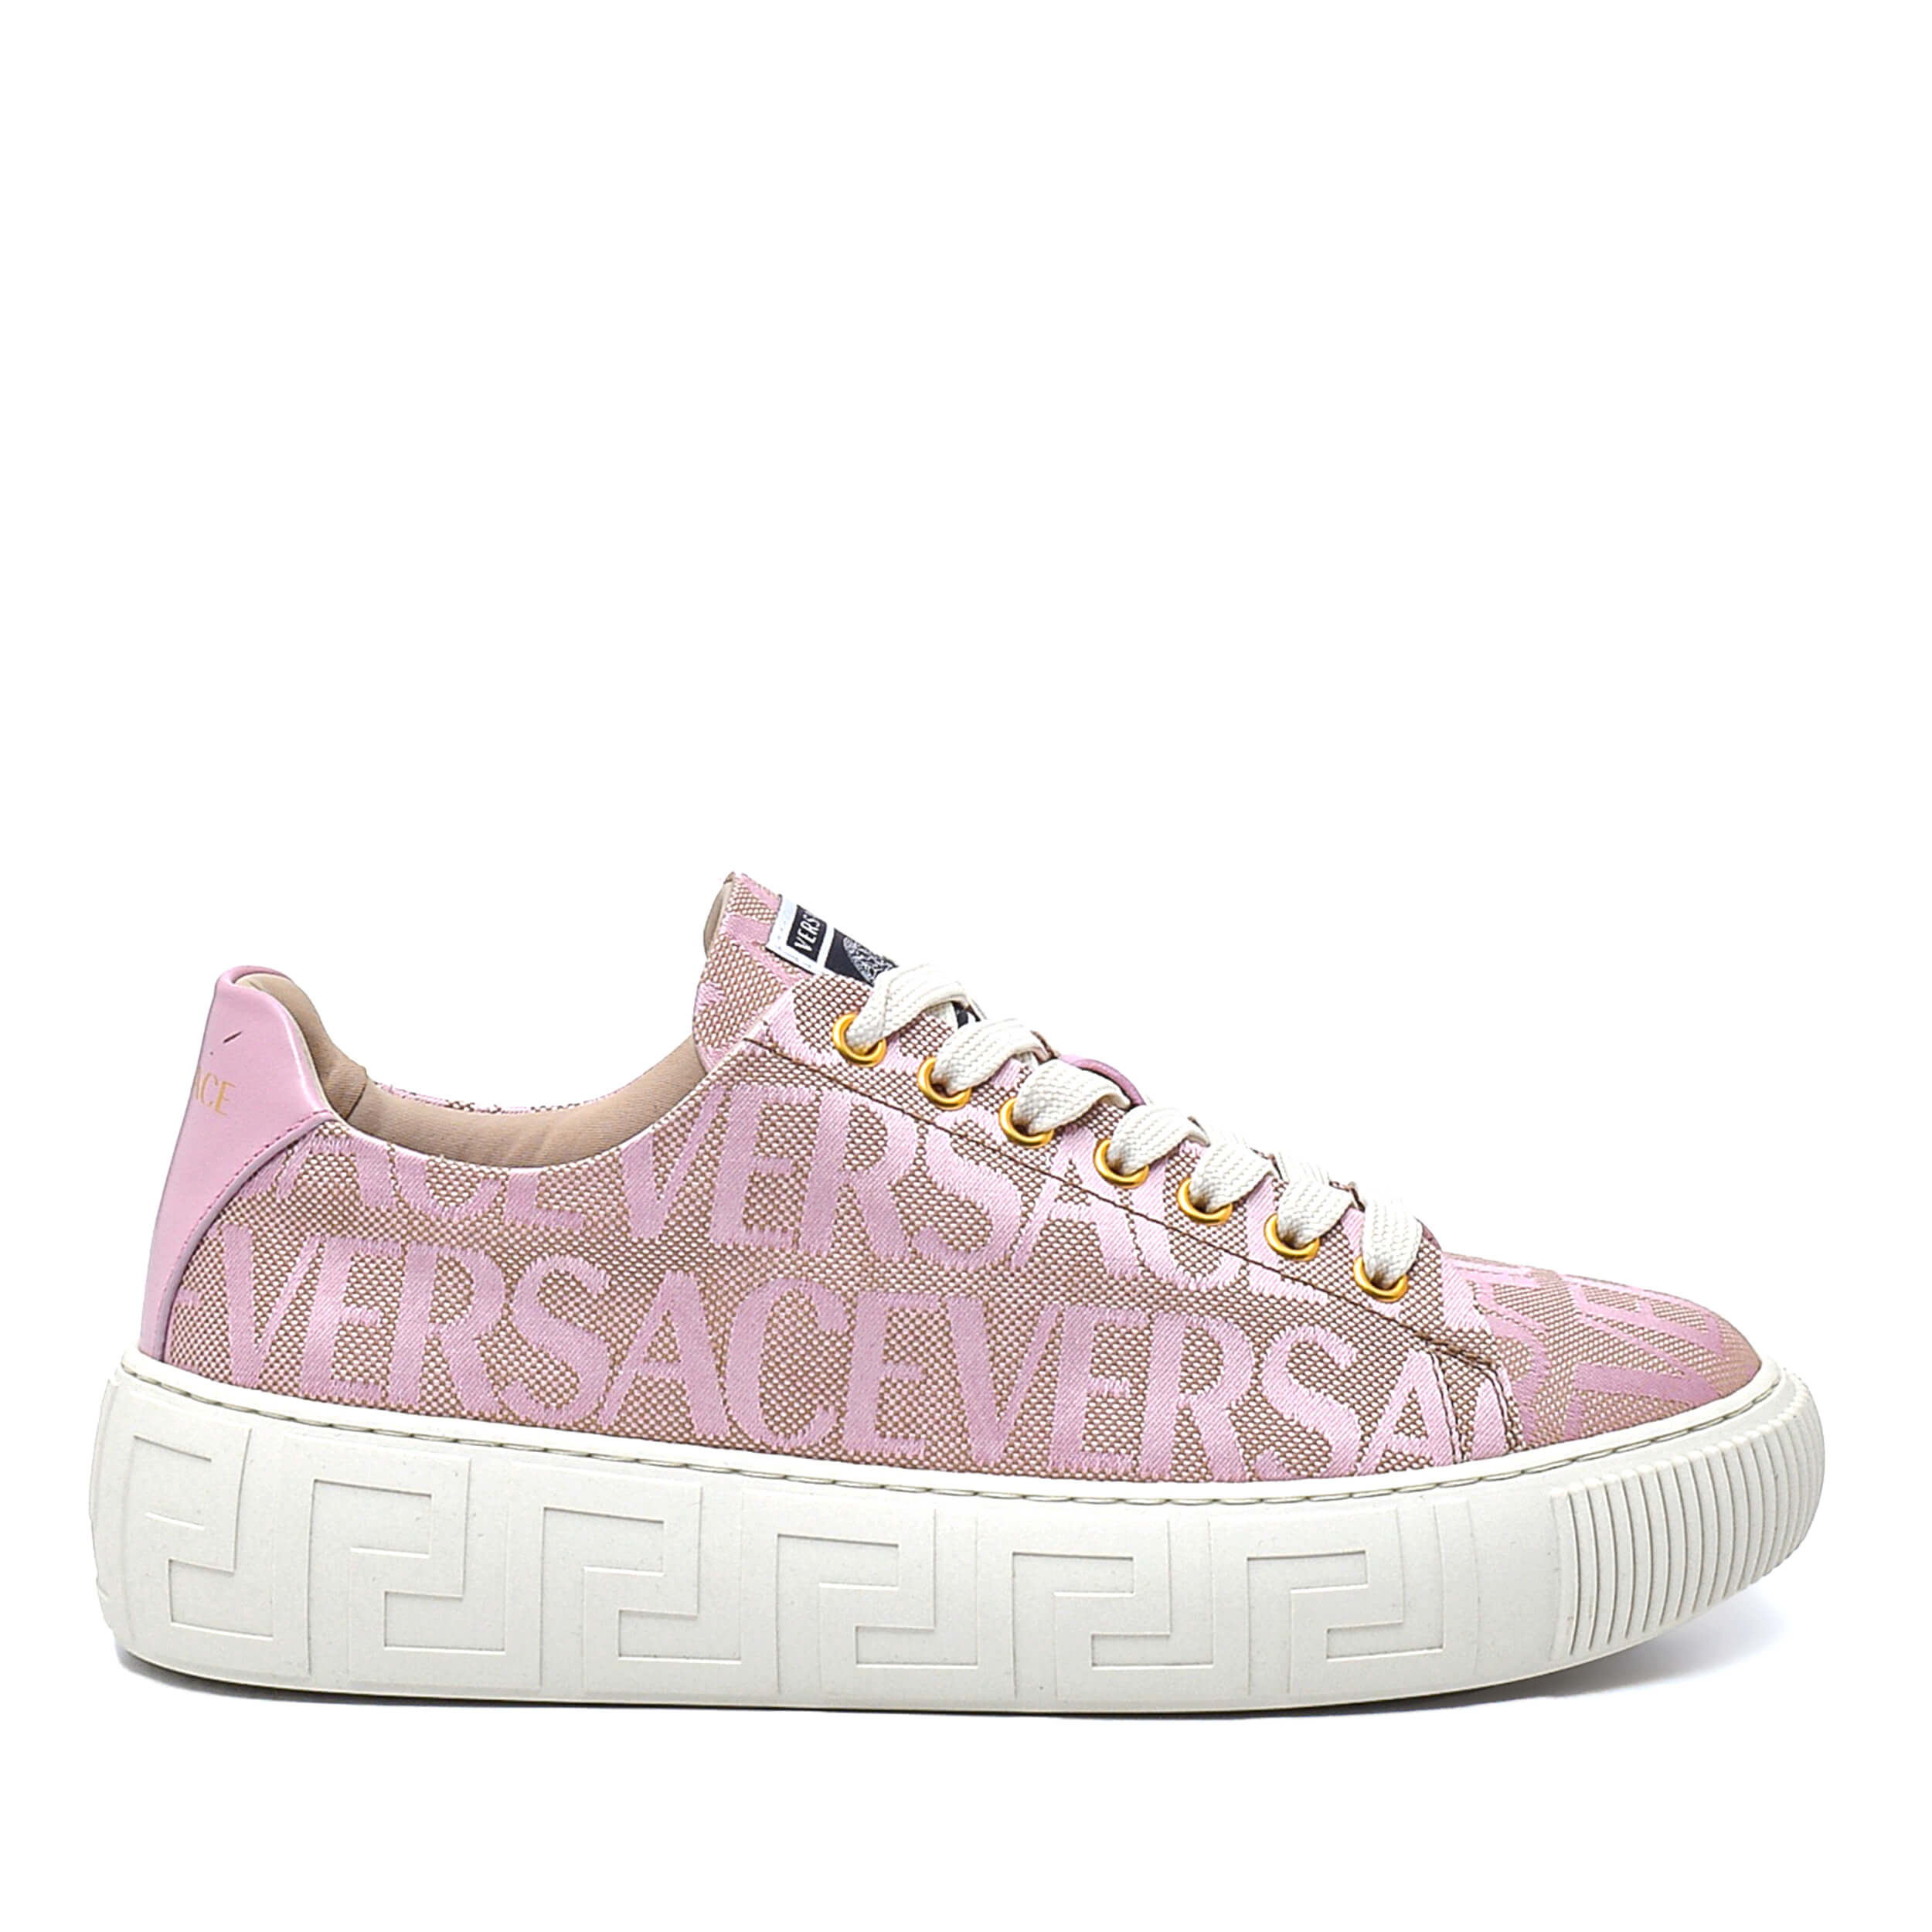 Versace - Lilac Canvas Greca Sneakers / 38.5